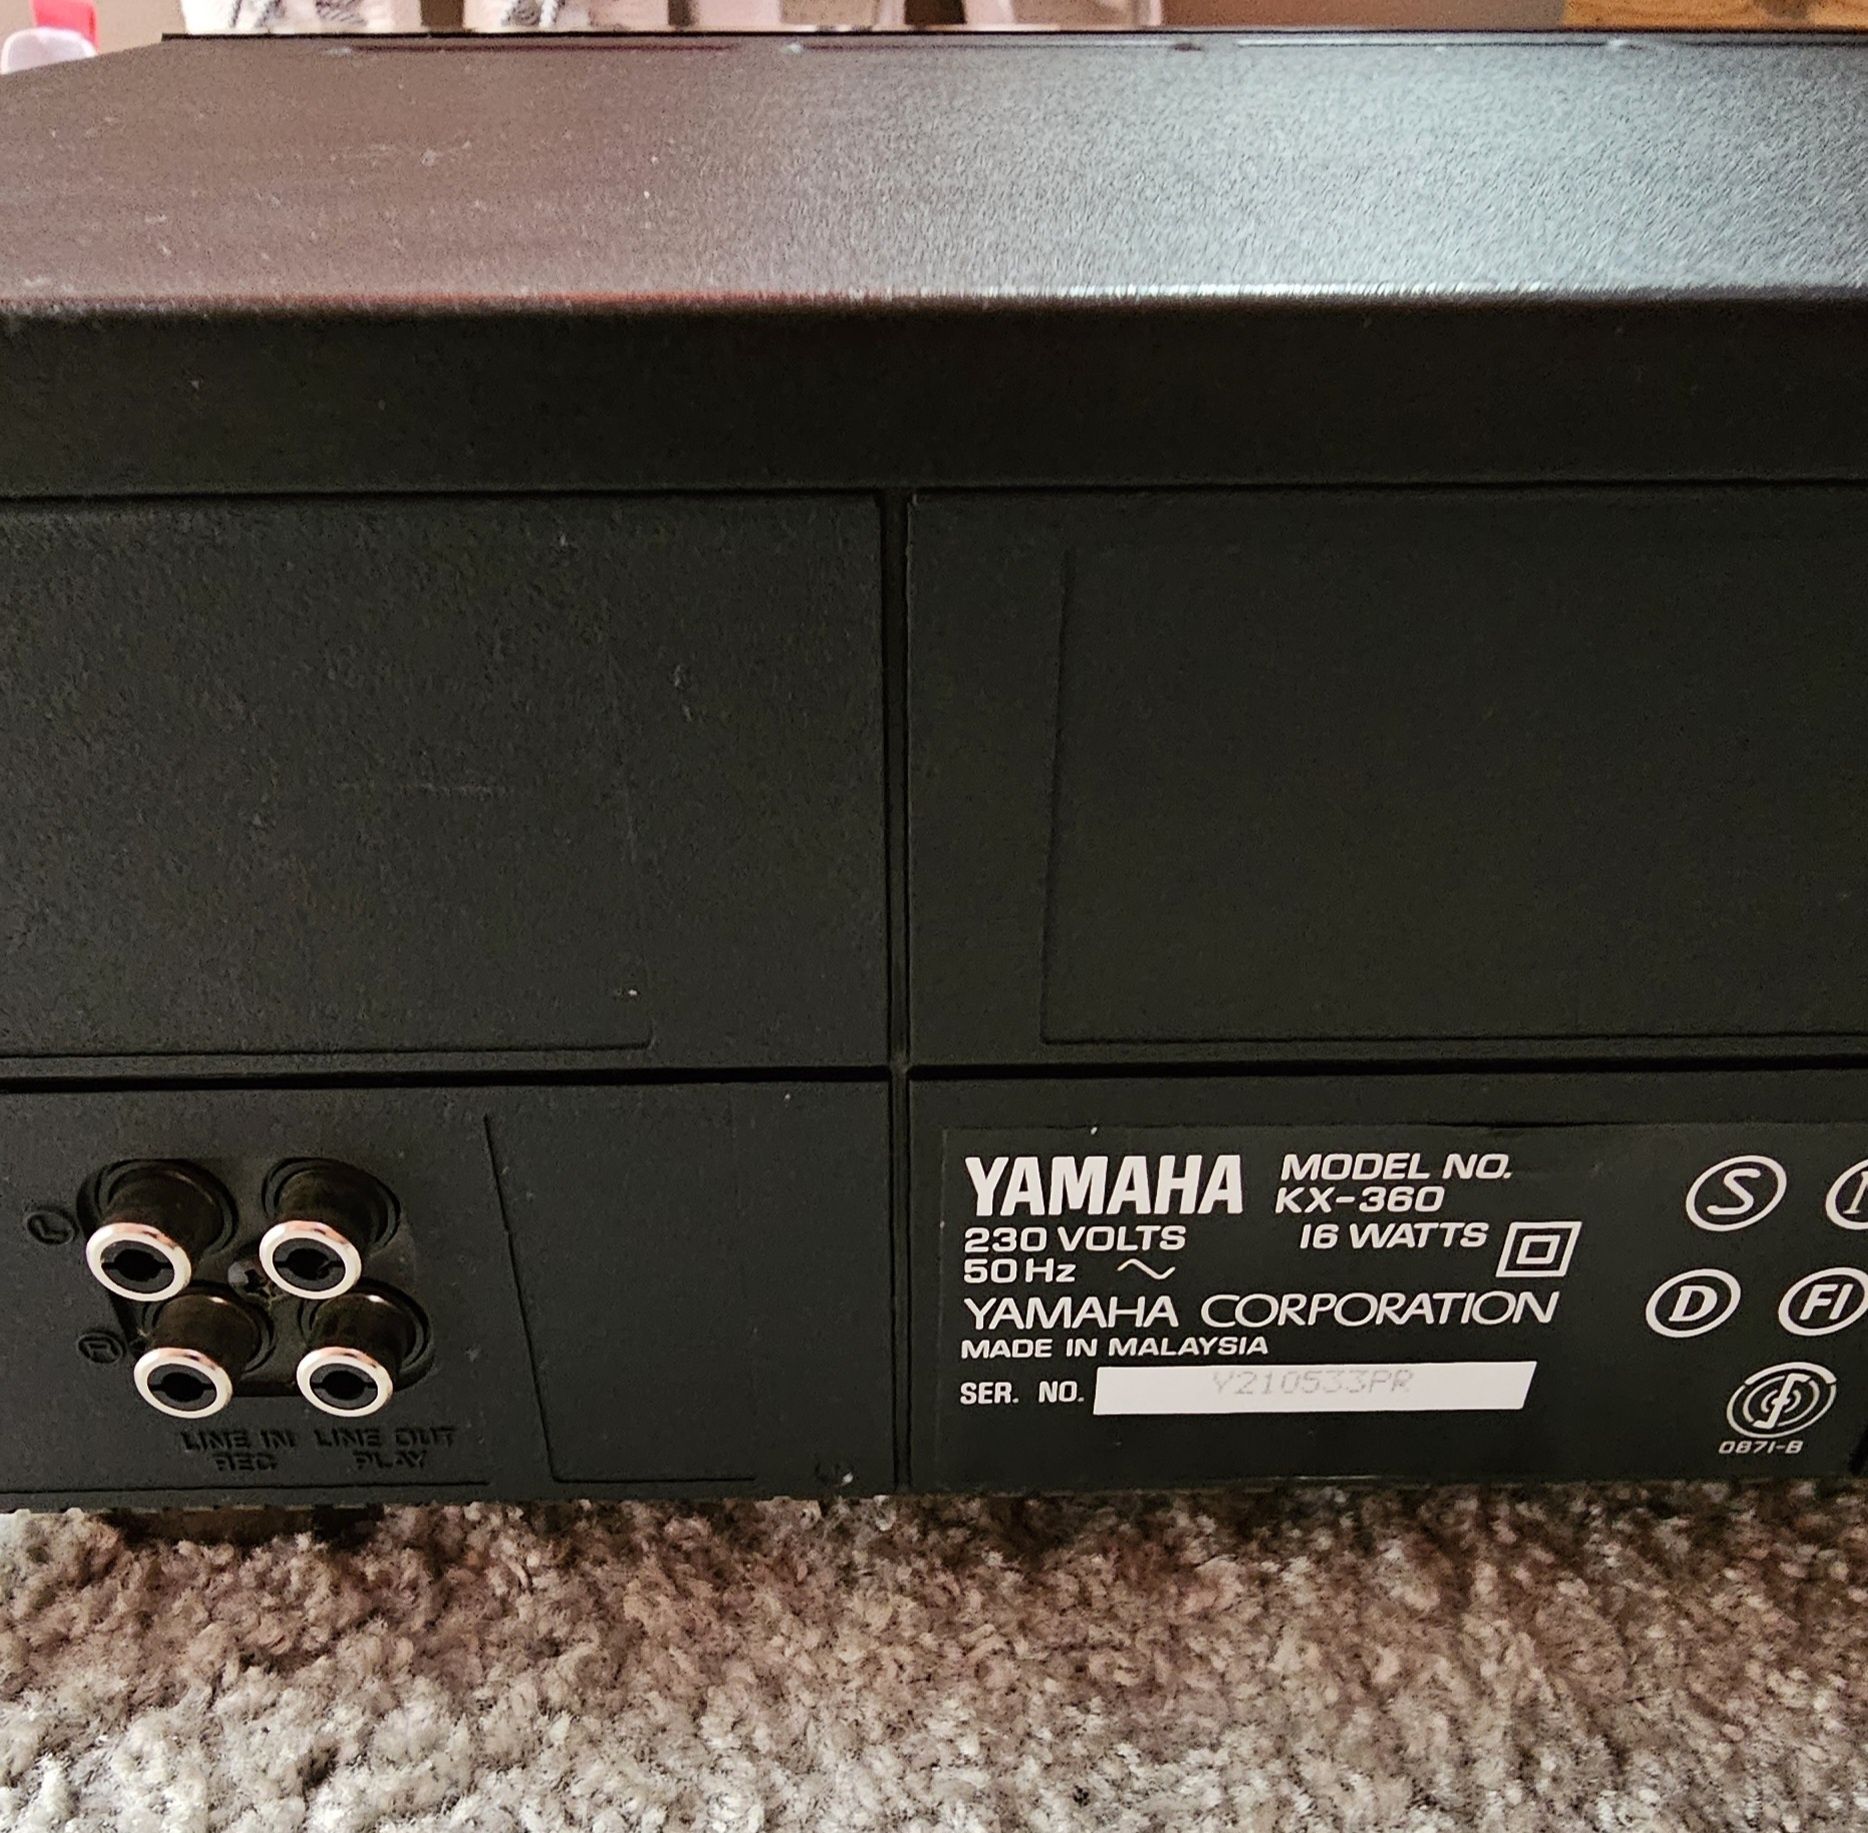 Magnetofon yamaha kx 360 plus kasety magnetofonowe